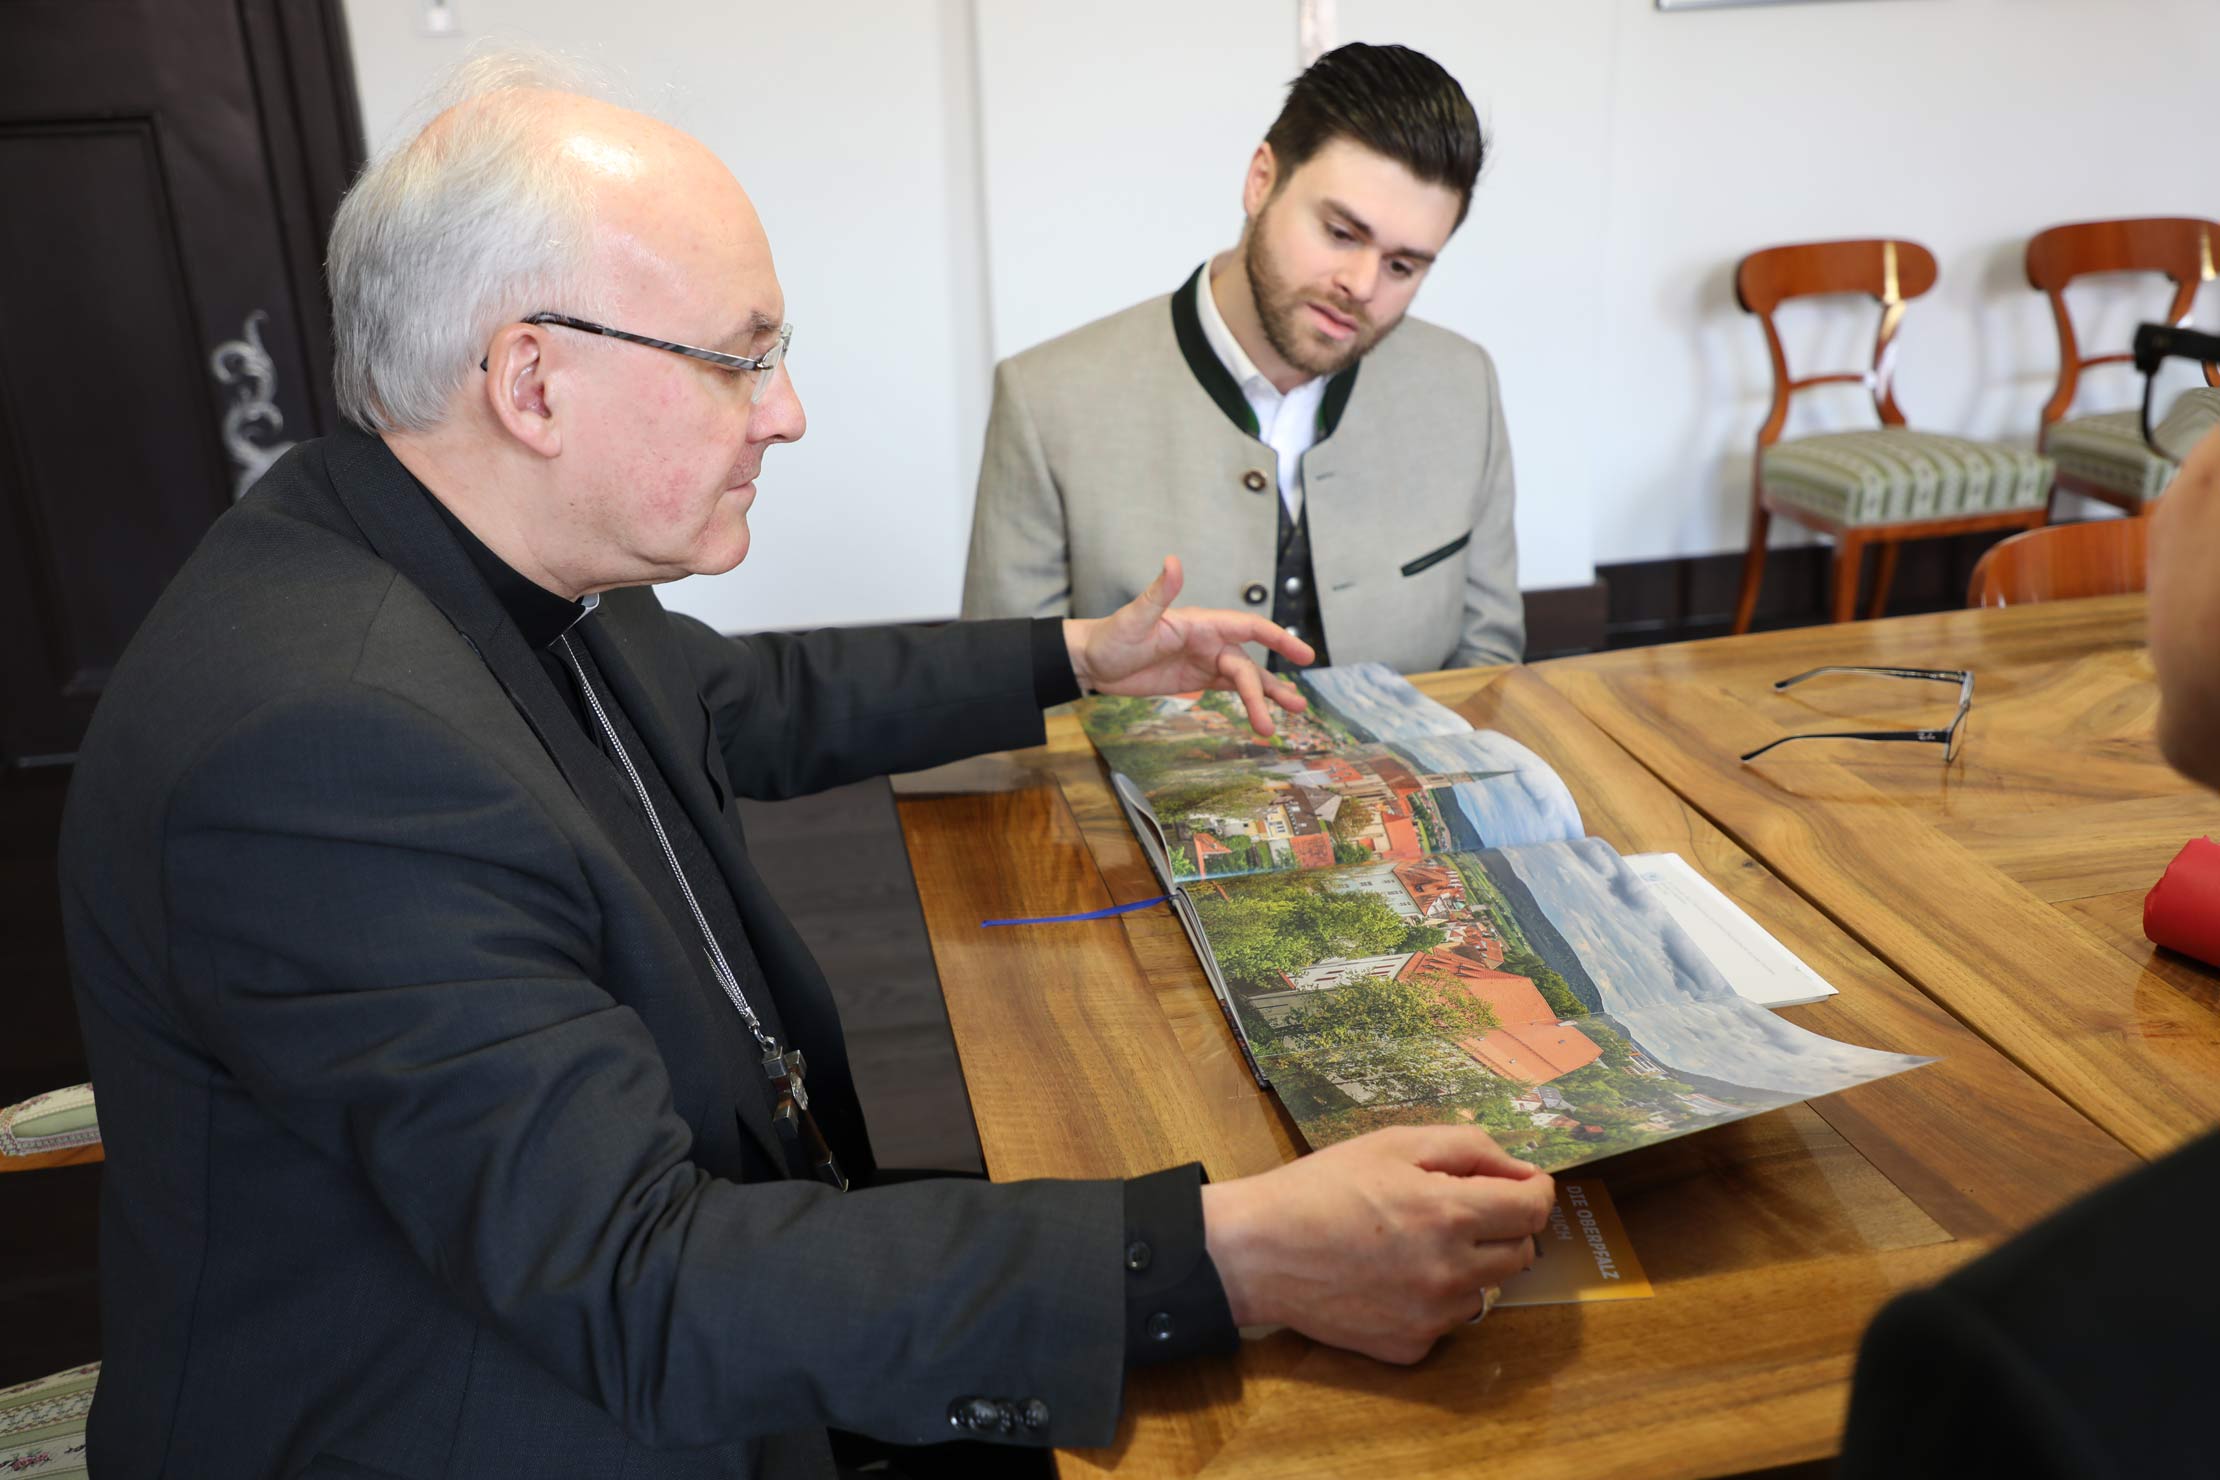 Bischof und junger Mann in bayerischer Tracht betrachten einen Bildband